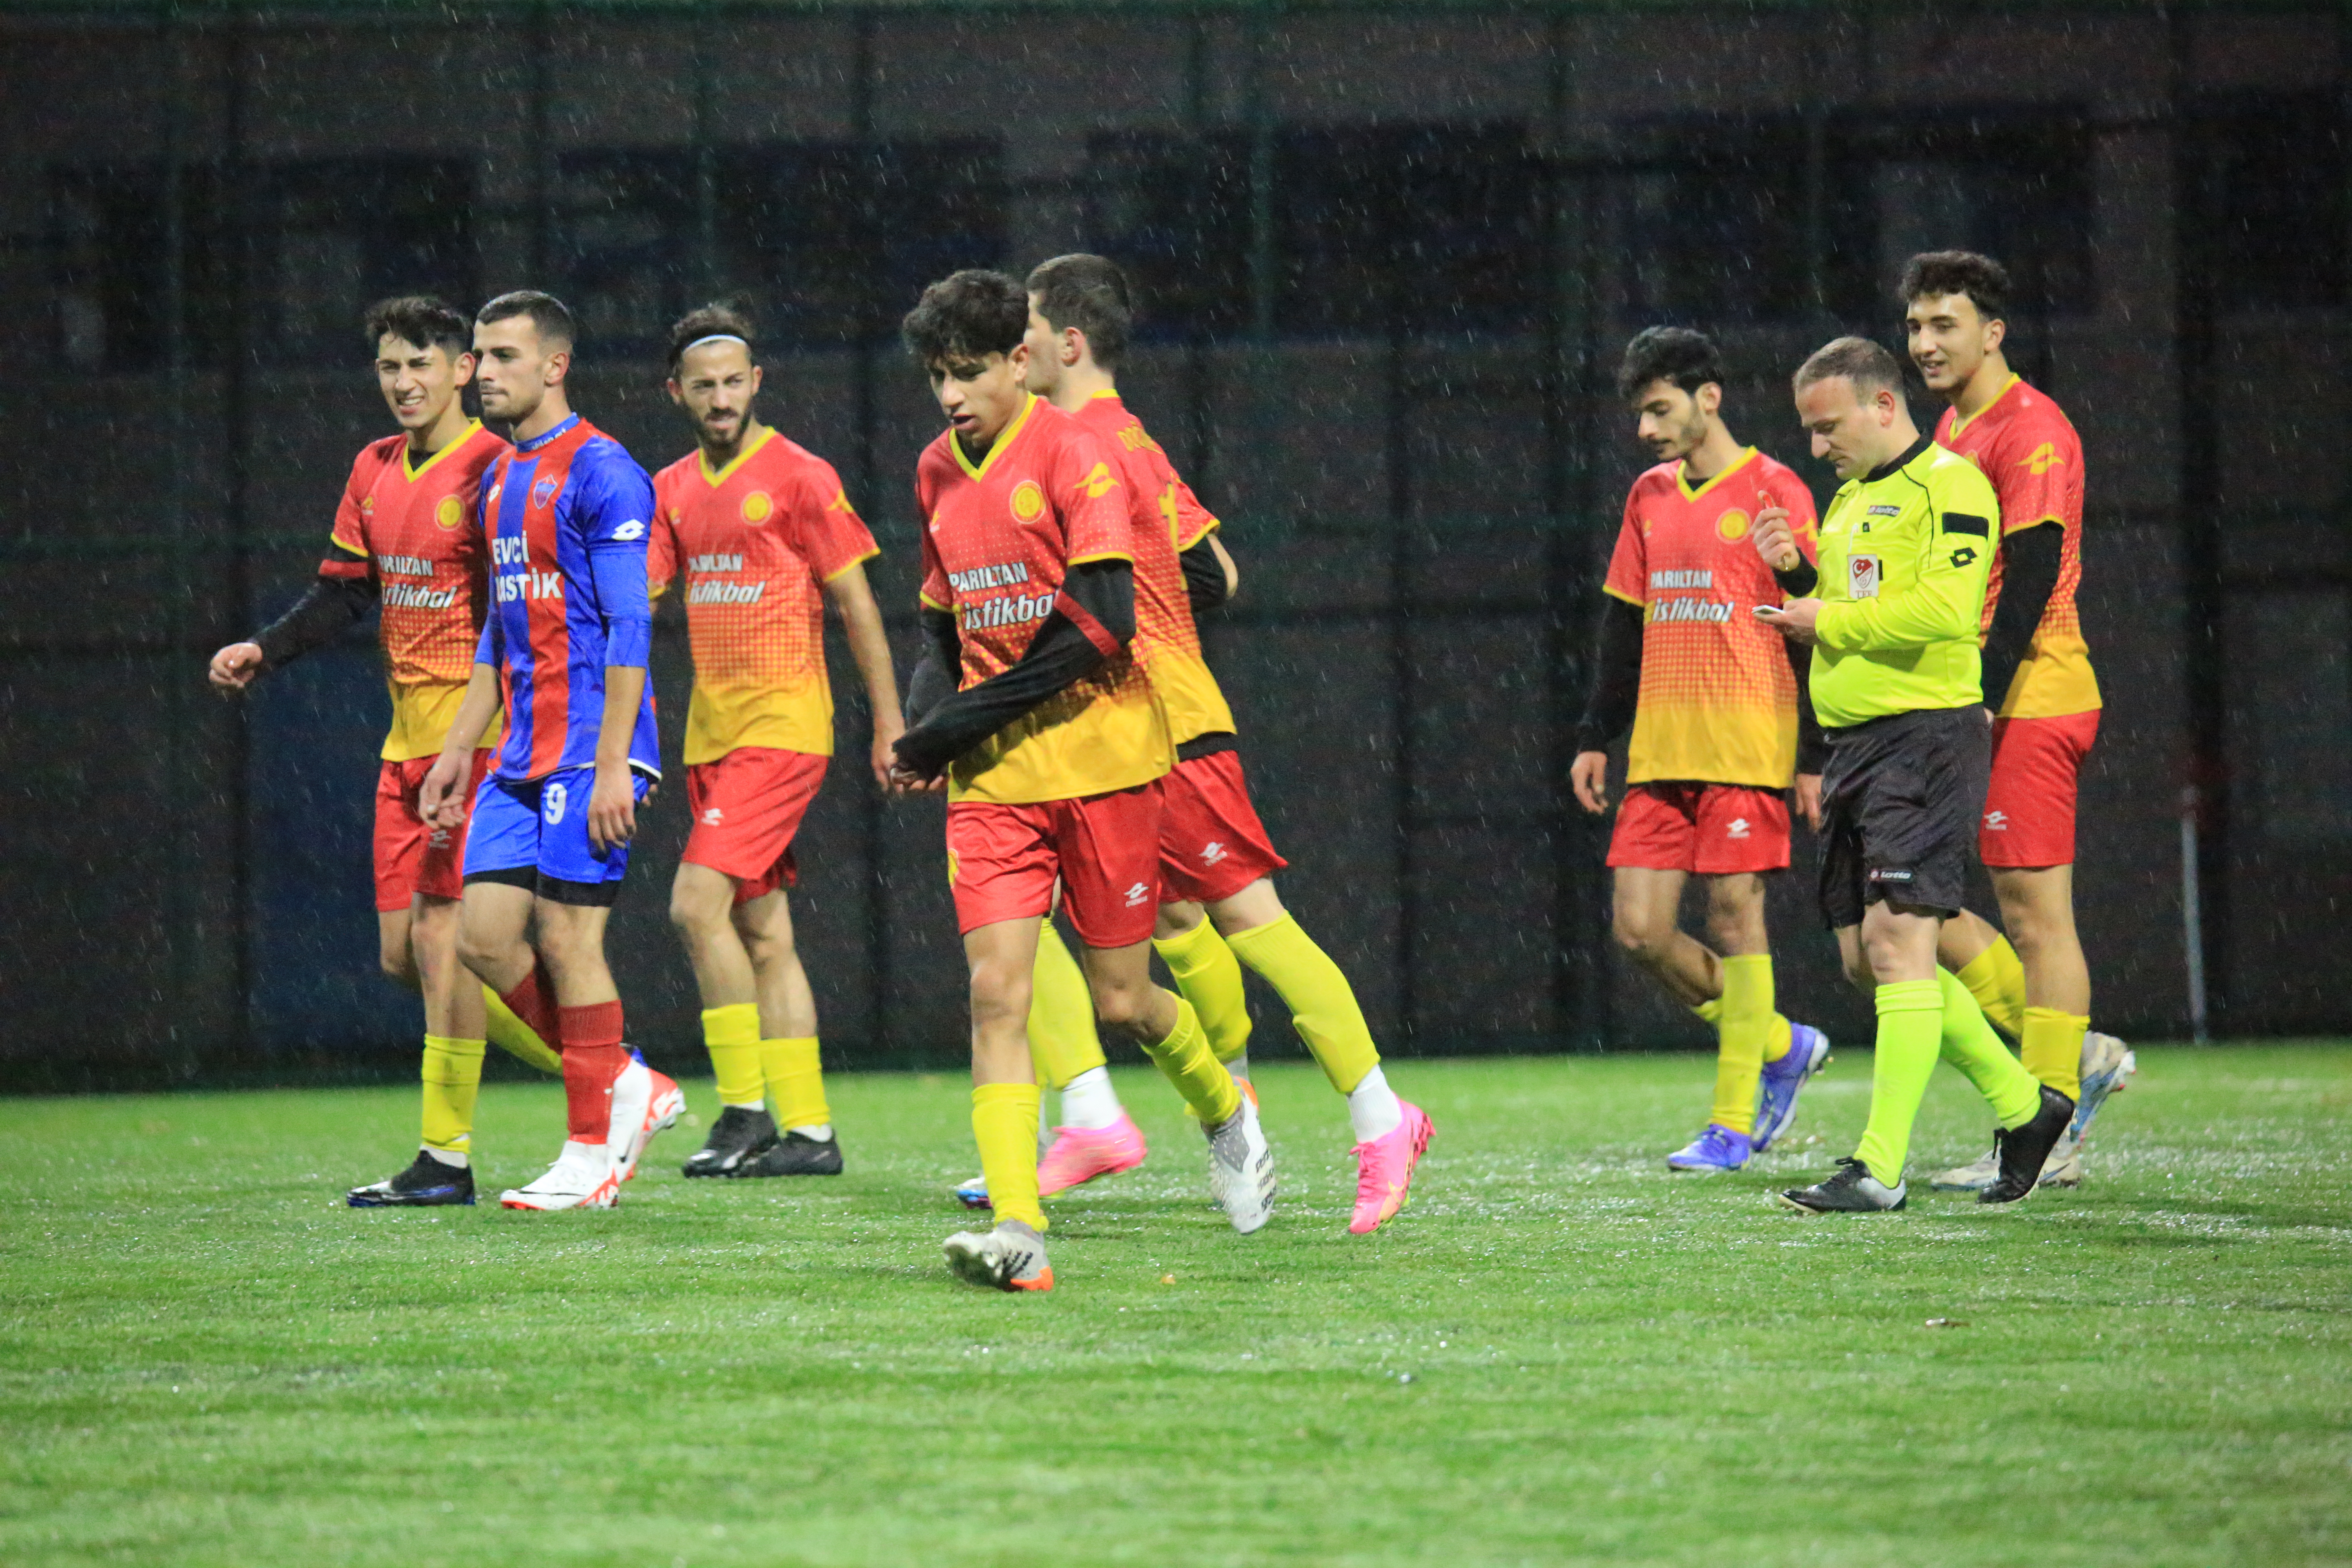 yalova-doganspor-coskunspor-futbol-ali-furkan-ozkantar-amator-kume (3)